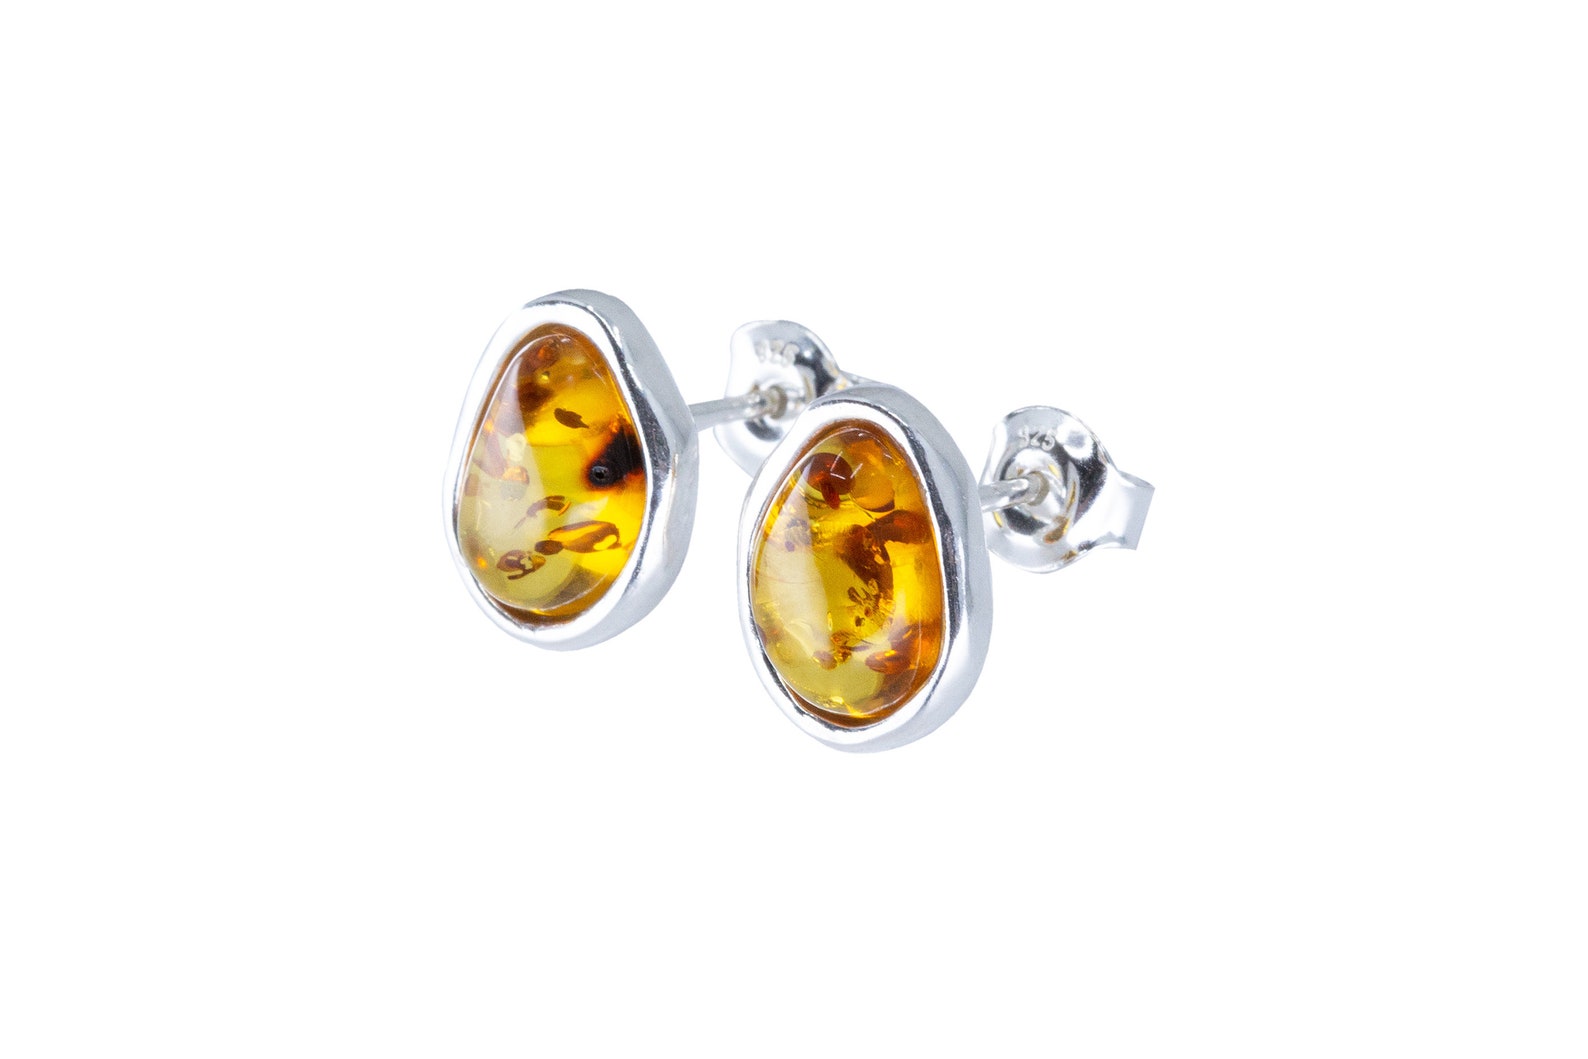 Amber ELEMENTS Stud Earrings- Earrings- Baltic Beauty